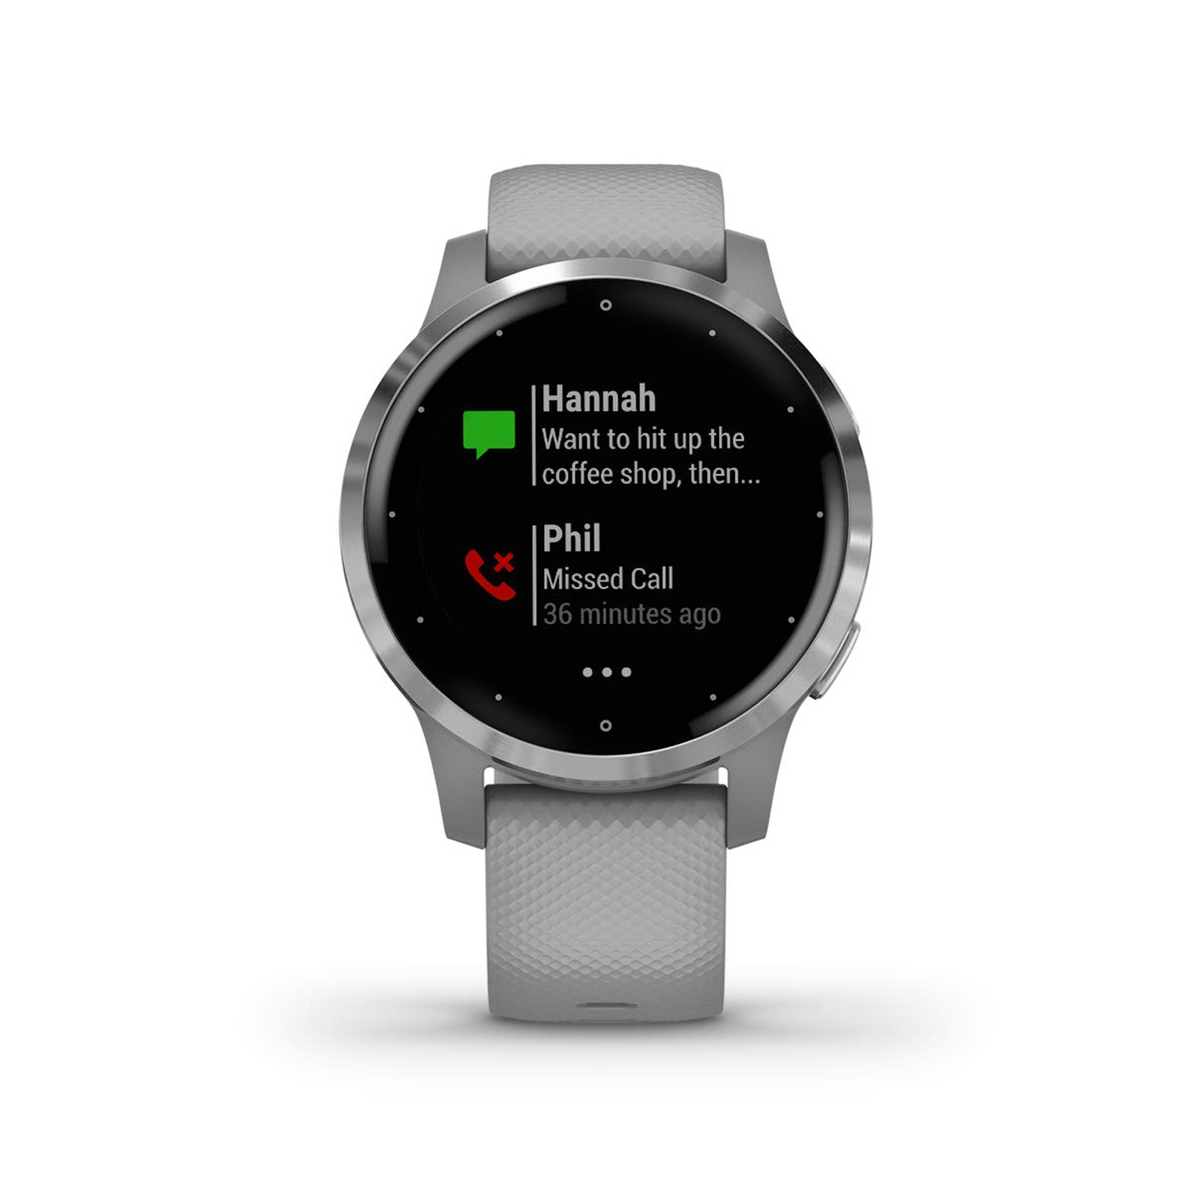 Garmin GPS Smart Watch Vivo Active 4S Grey